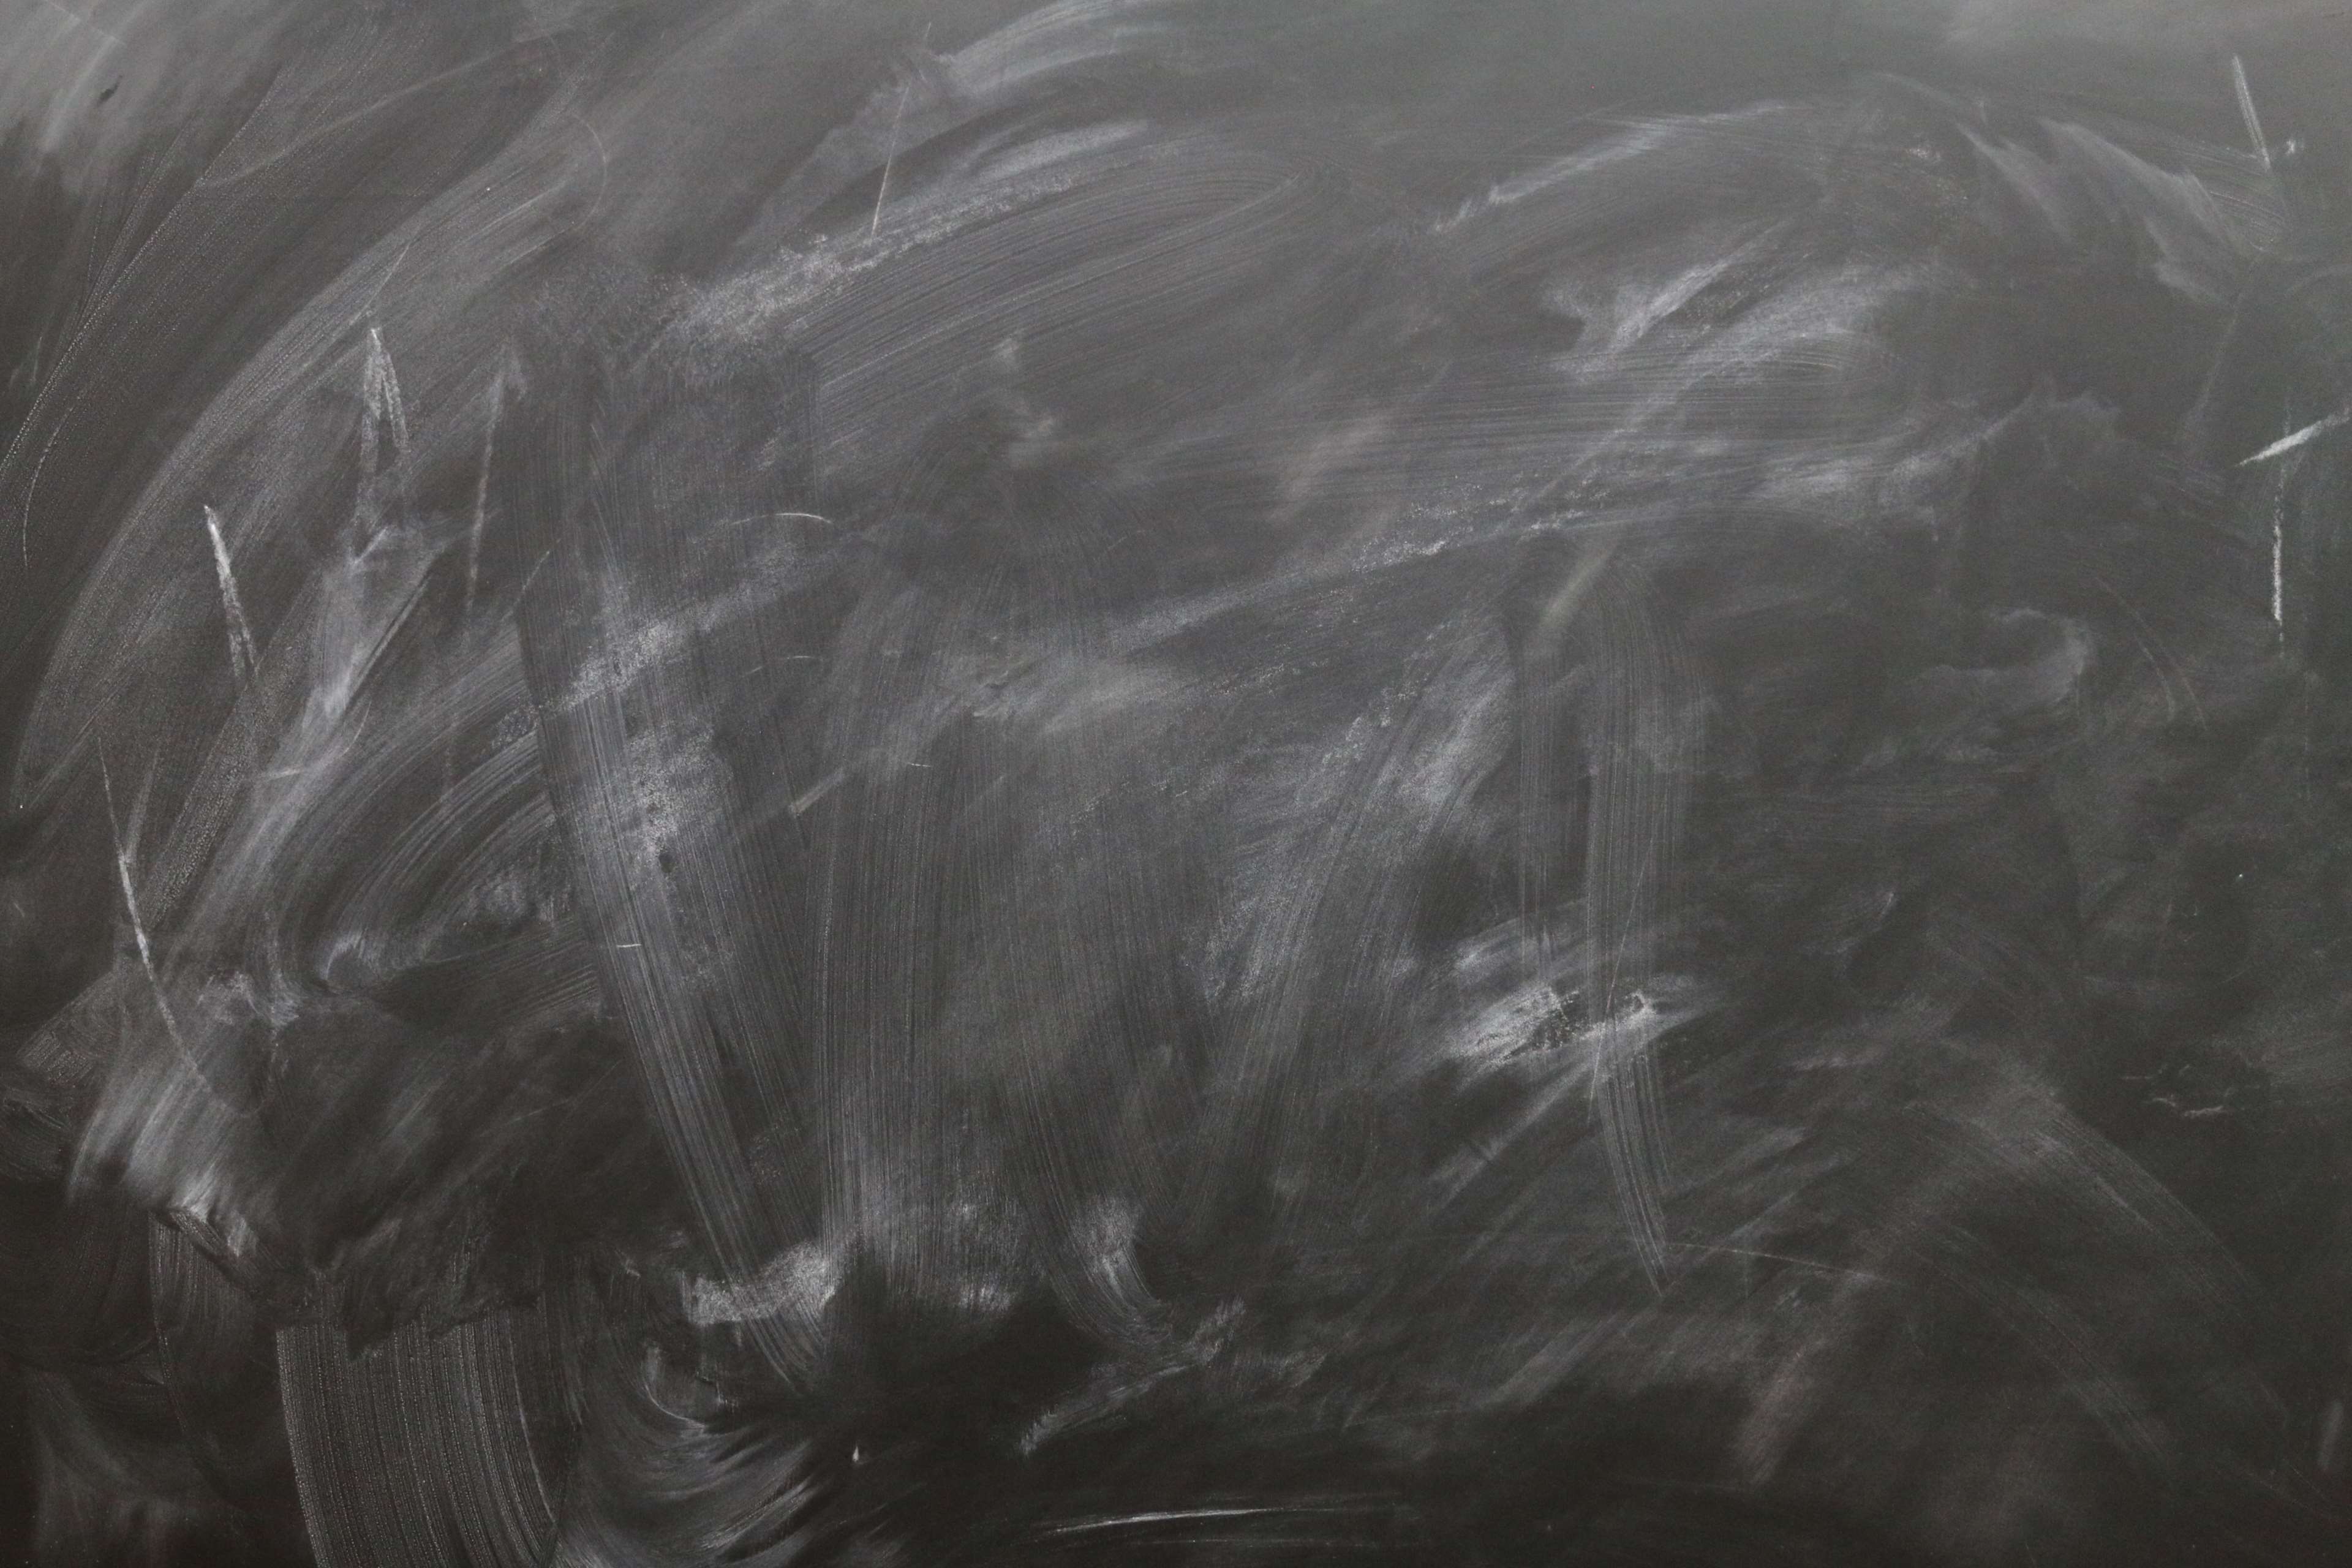 blackboard, board, chalk, copy space, dirty, education, empty, leave